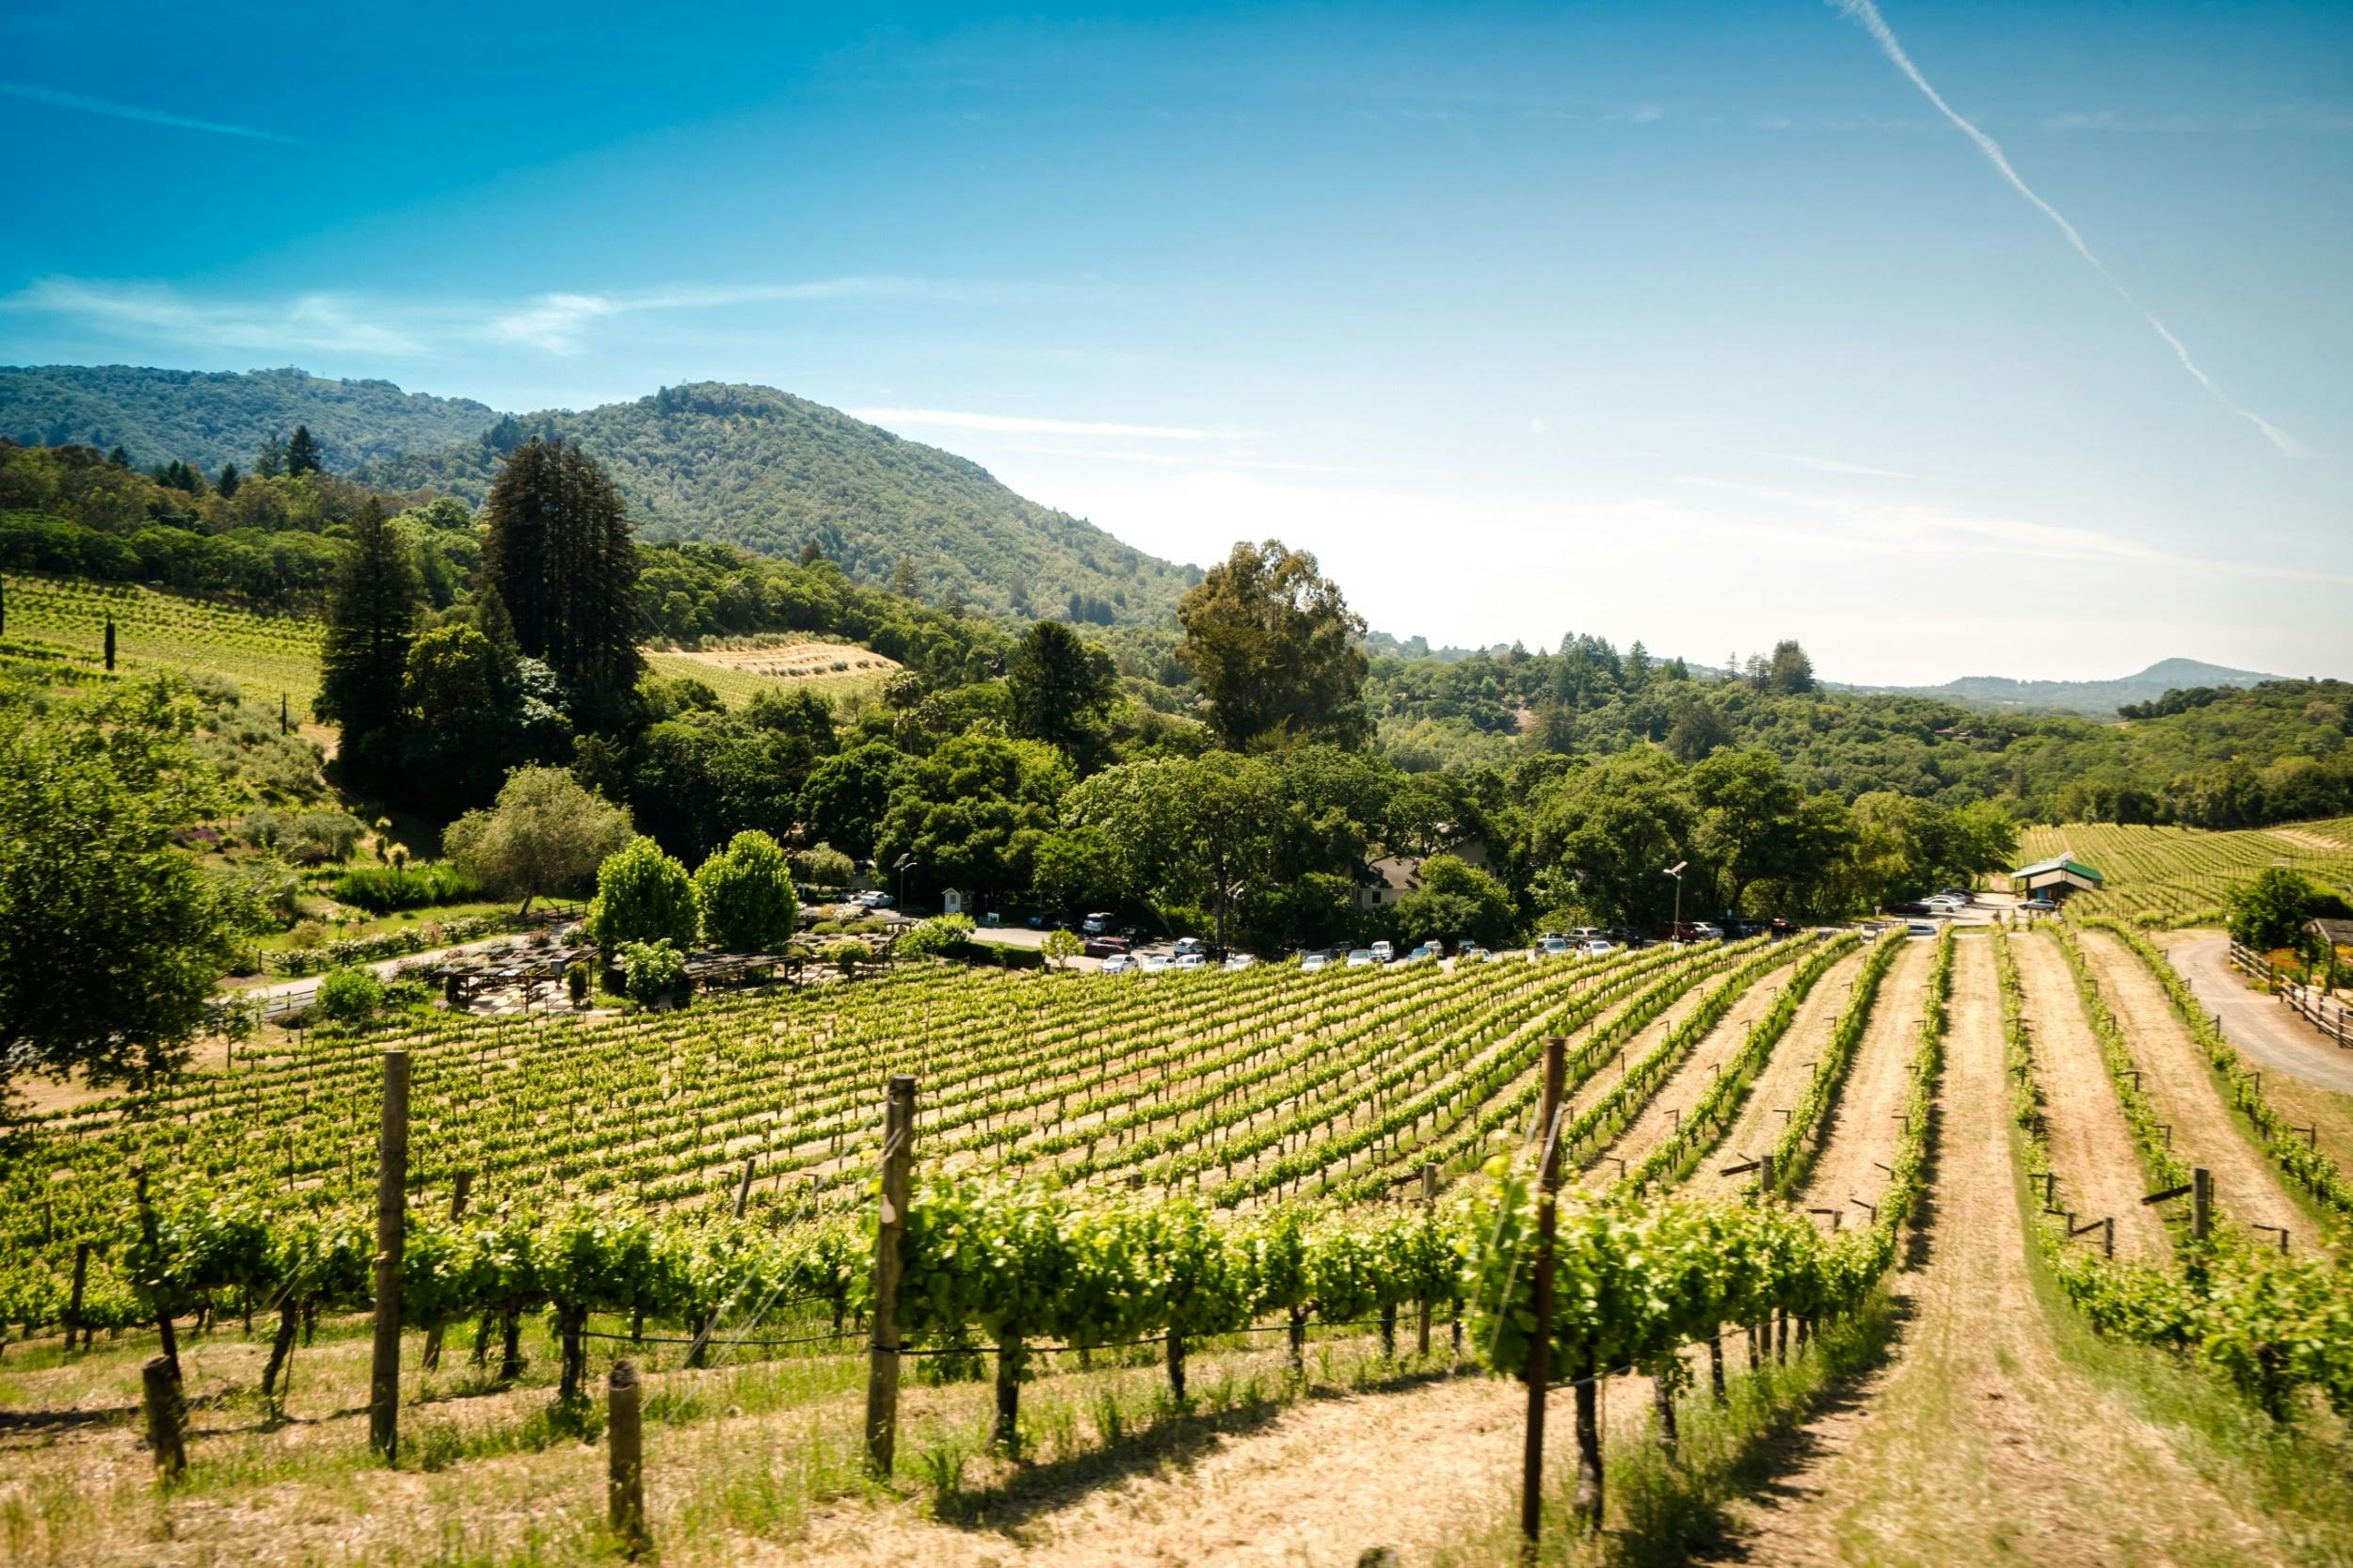 En solig utsikt över en vingård med rader av vinstockar, omgivna av gröna kullar och träd.